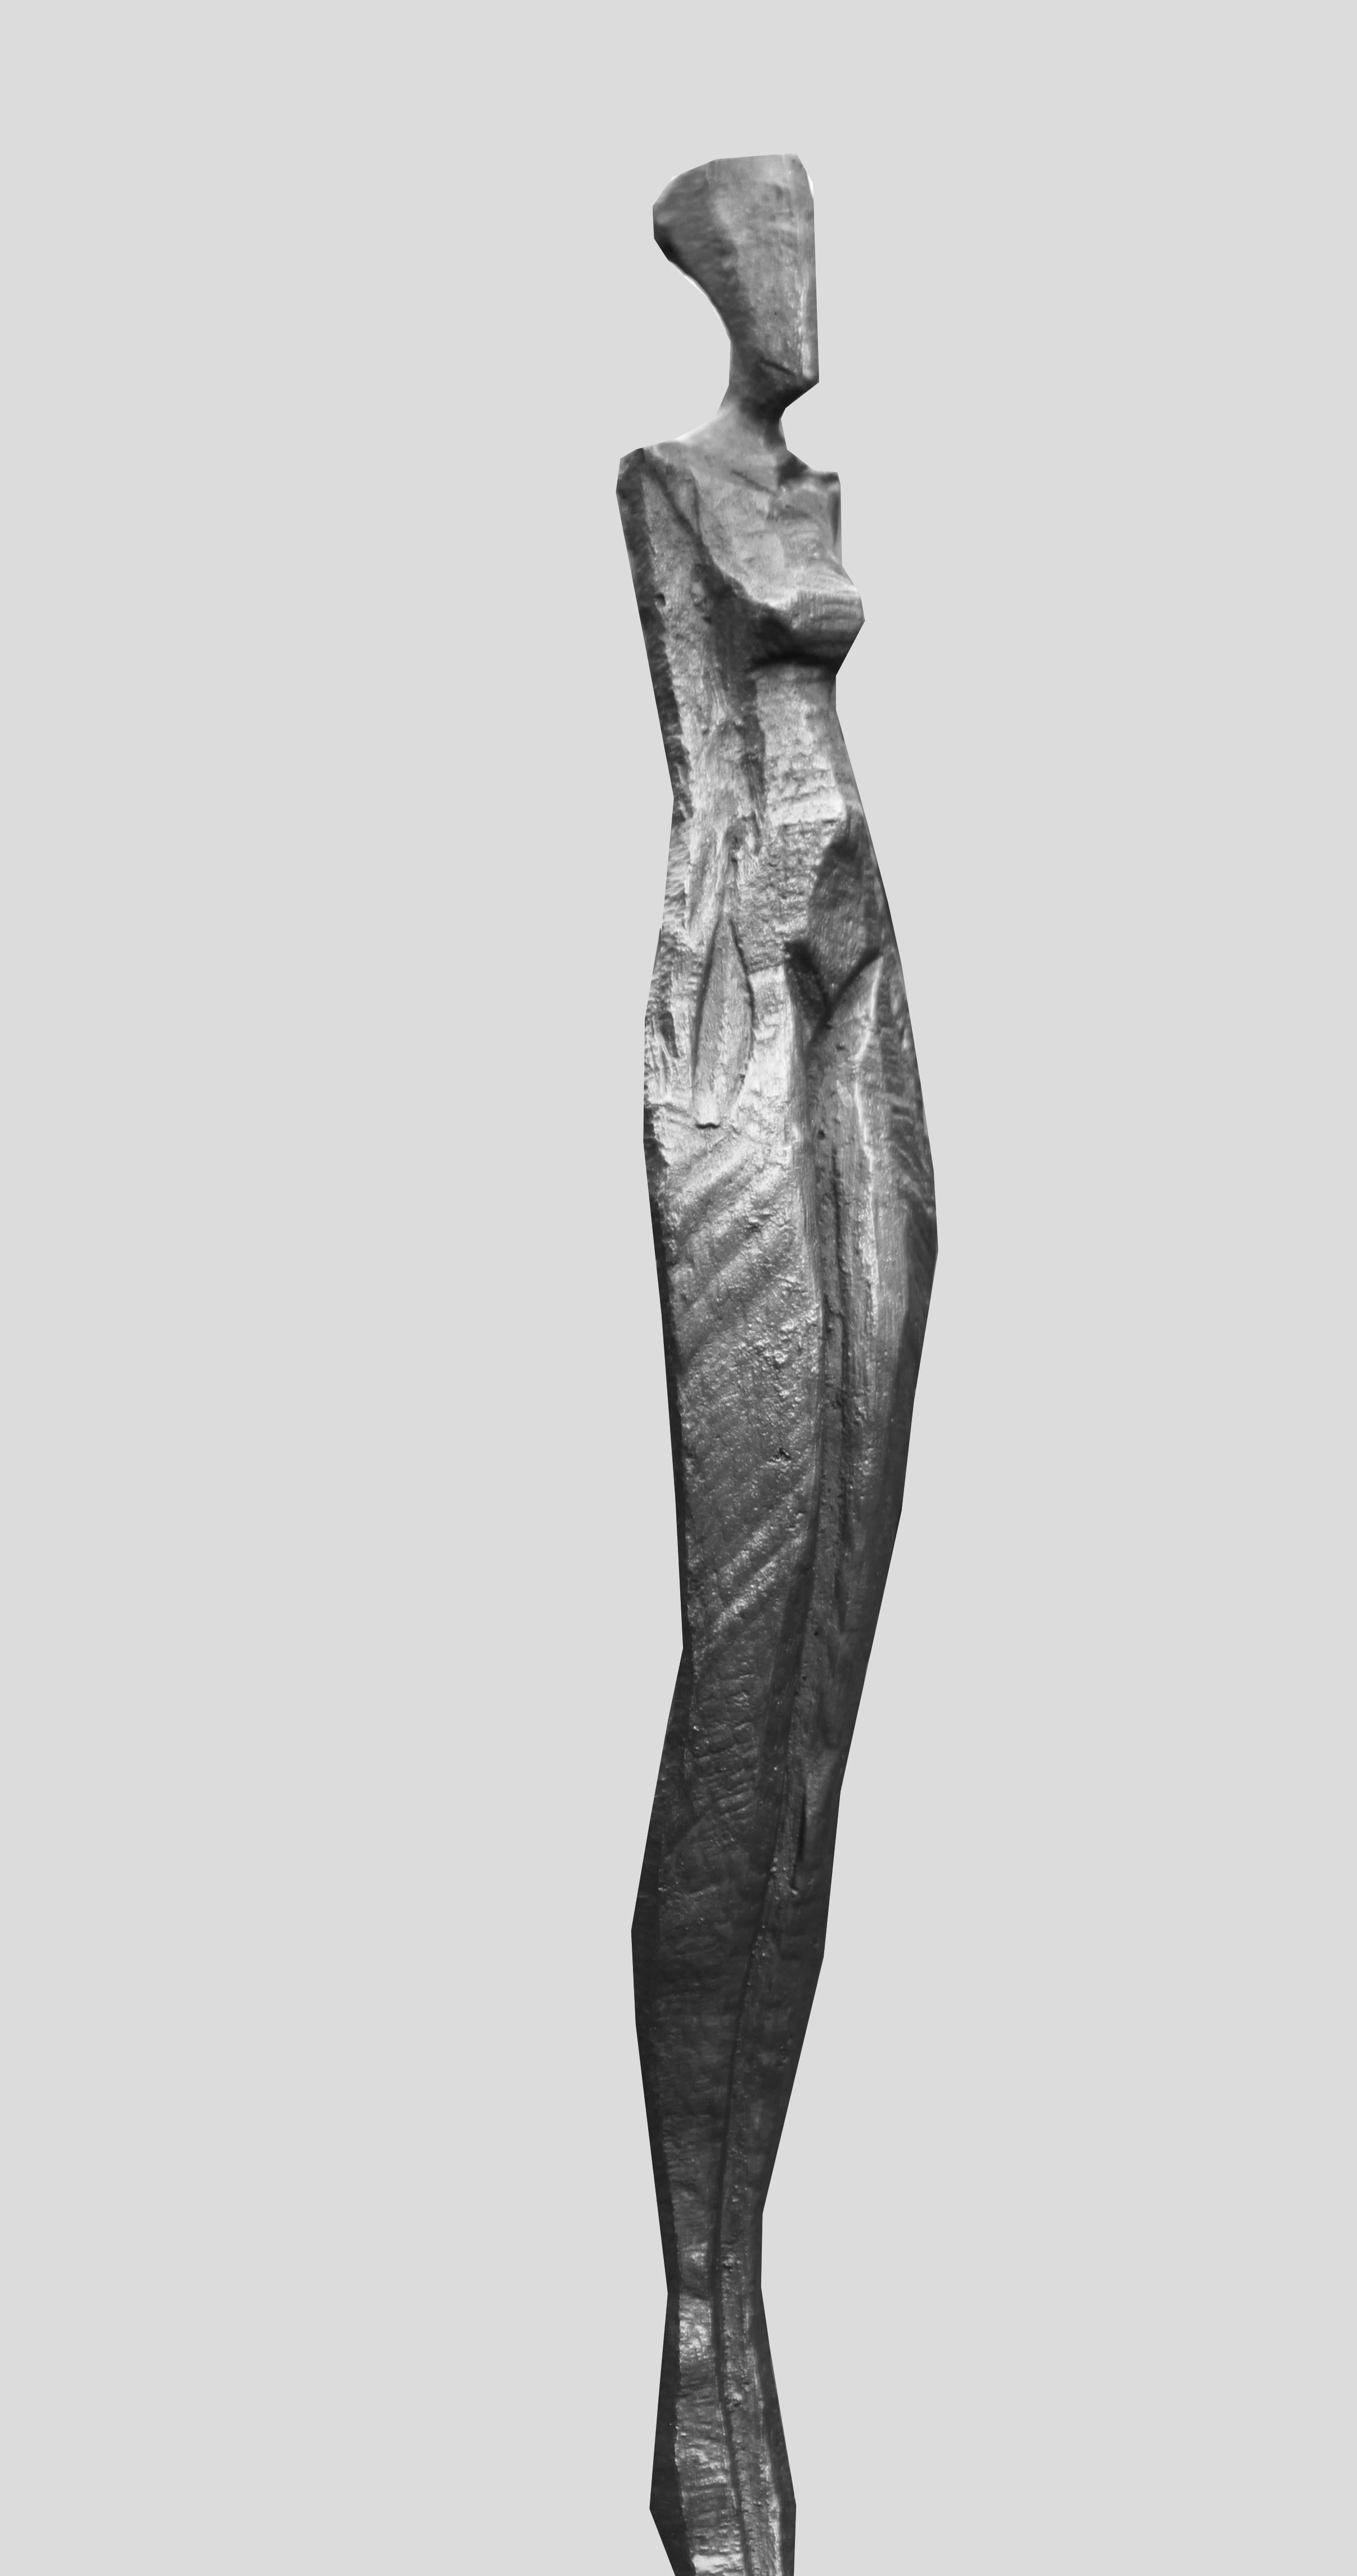 Marie III ist eine hohe, elegante Bronzeskulptur einer menschlichen Figur.  

Nando Kallweit ist ein deutscher Bildhauer, der in Bronze und Eiche arbeitet.  Kallweit schnitzt das Originalstück mit der Kettensäge aus einem Stück Eiche.  Mit dem